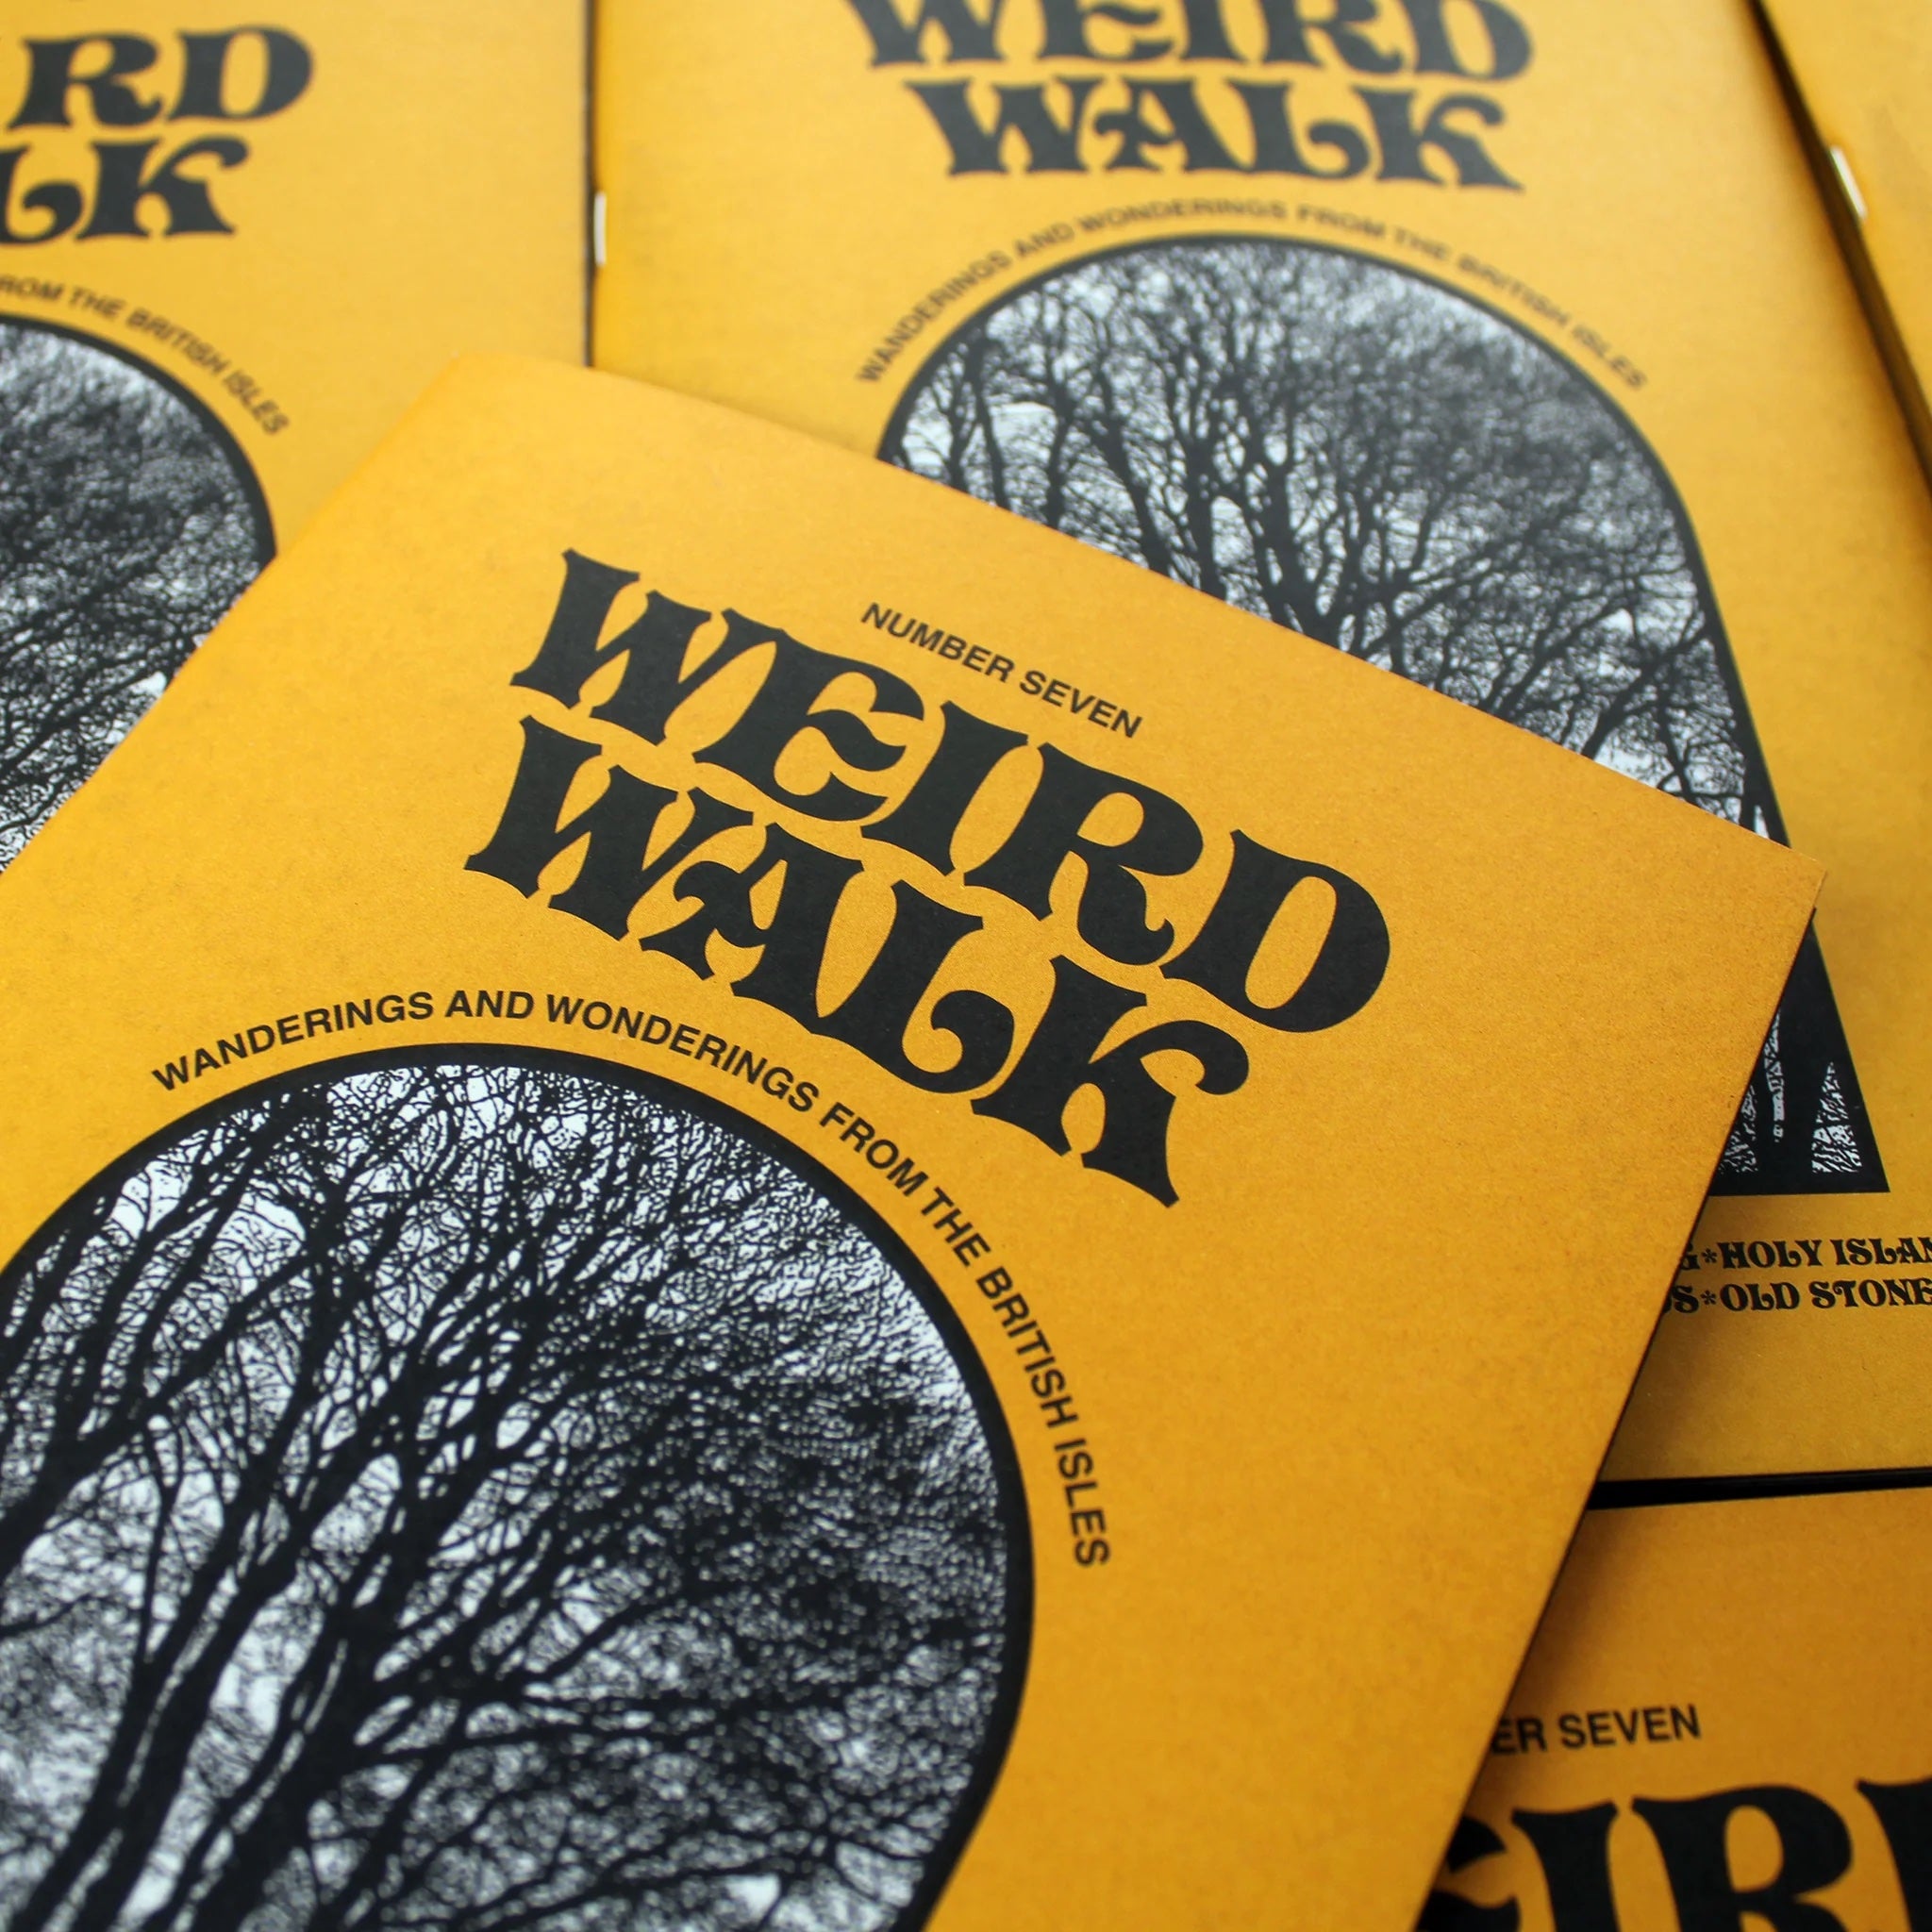 Weird Walk Issue 7